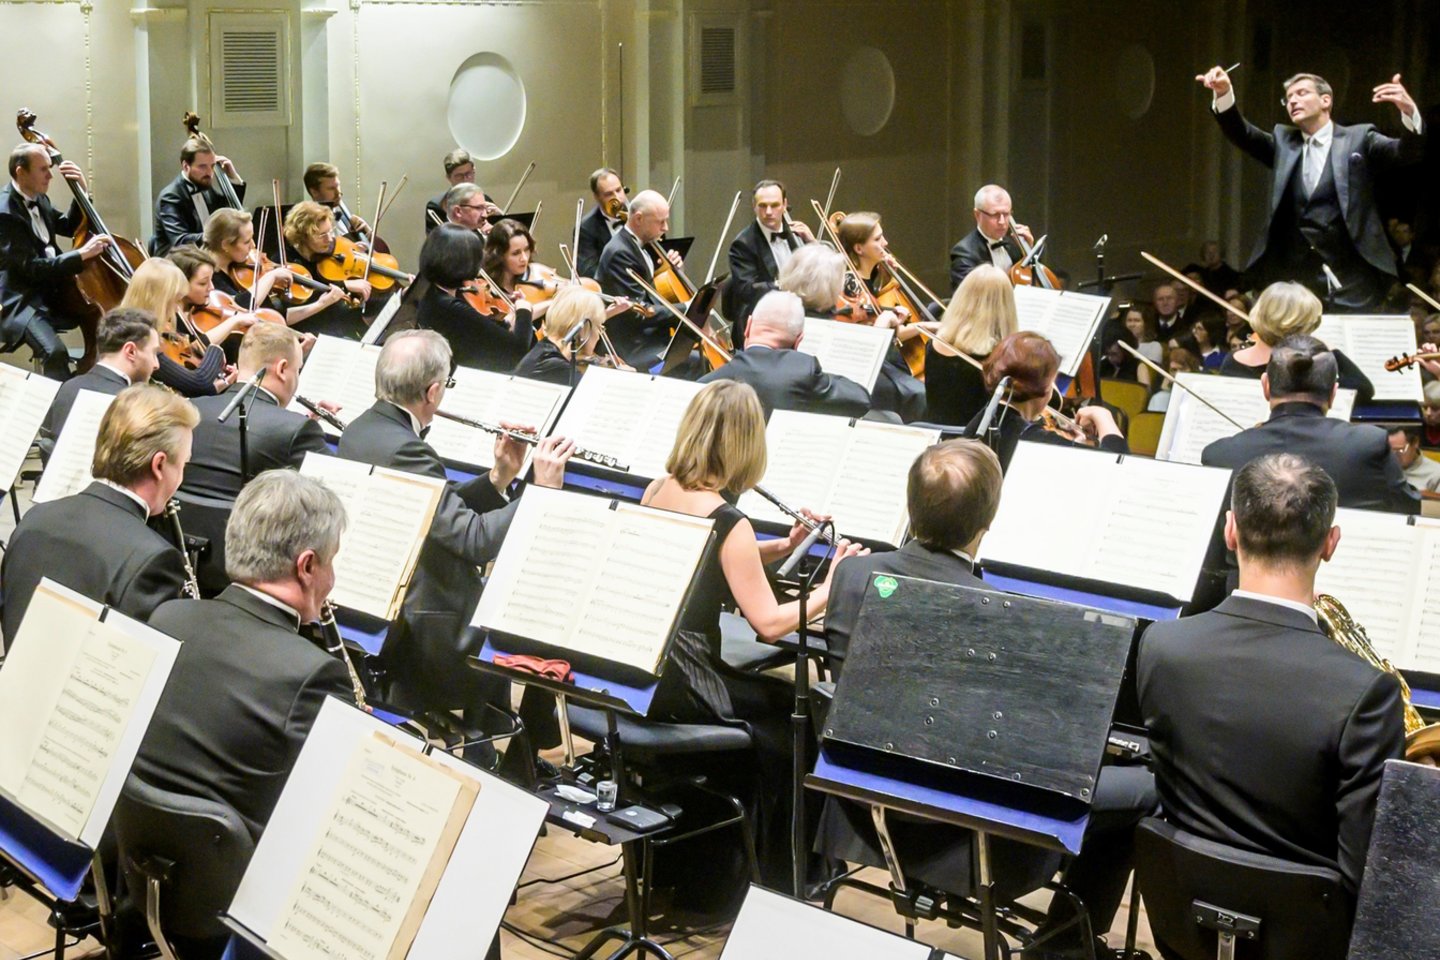  Lietuvos nacionalinis simfoninis orkestras, diriguojamas M.Pitrėno, groja L.van Beethoveną.<br> D.Matvejevo nuotr.